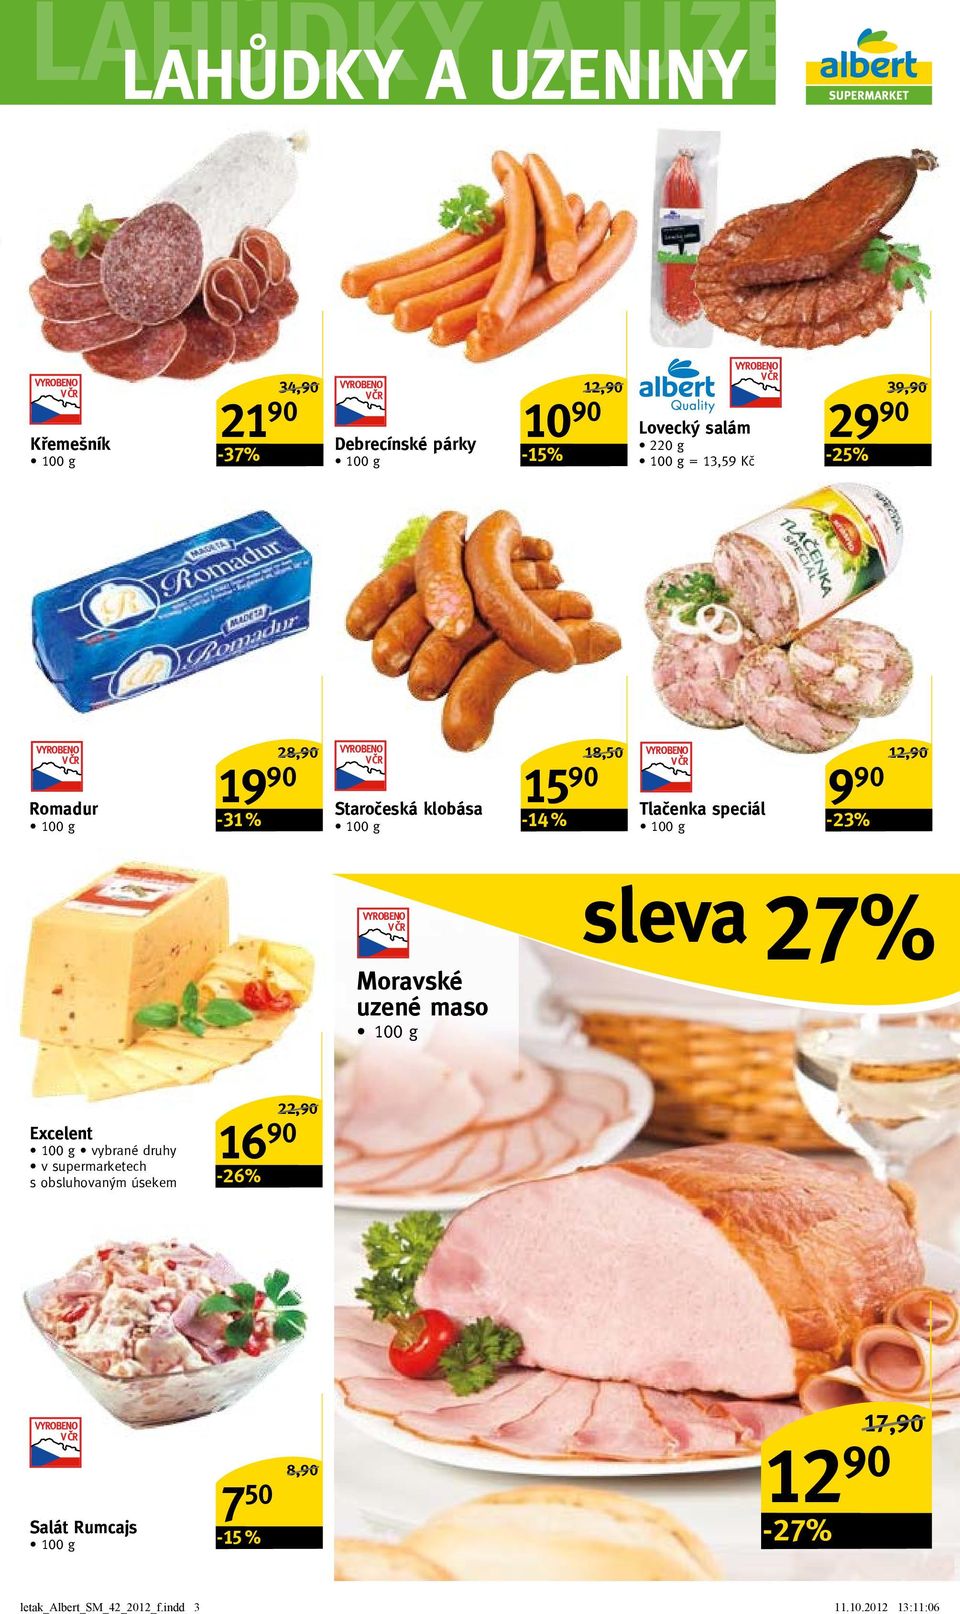 speciál -23% 12,90/ Moravské uzené maso sleva 27% excelent v supermarketech s obsluhovaným úsekem 16